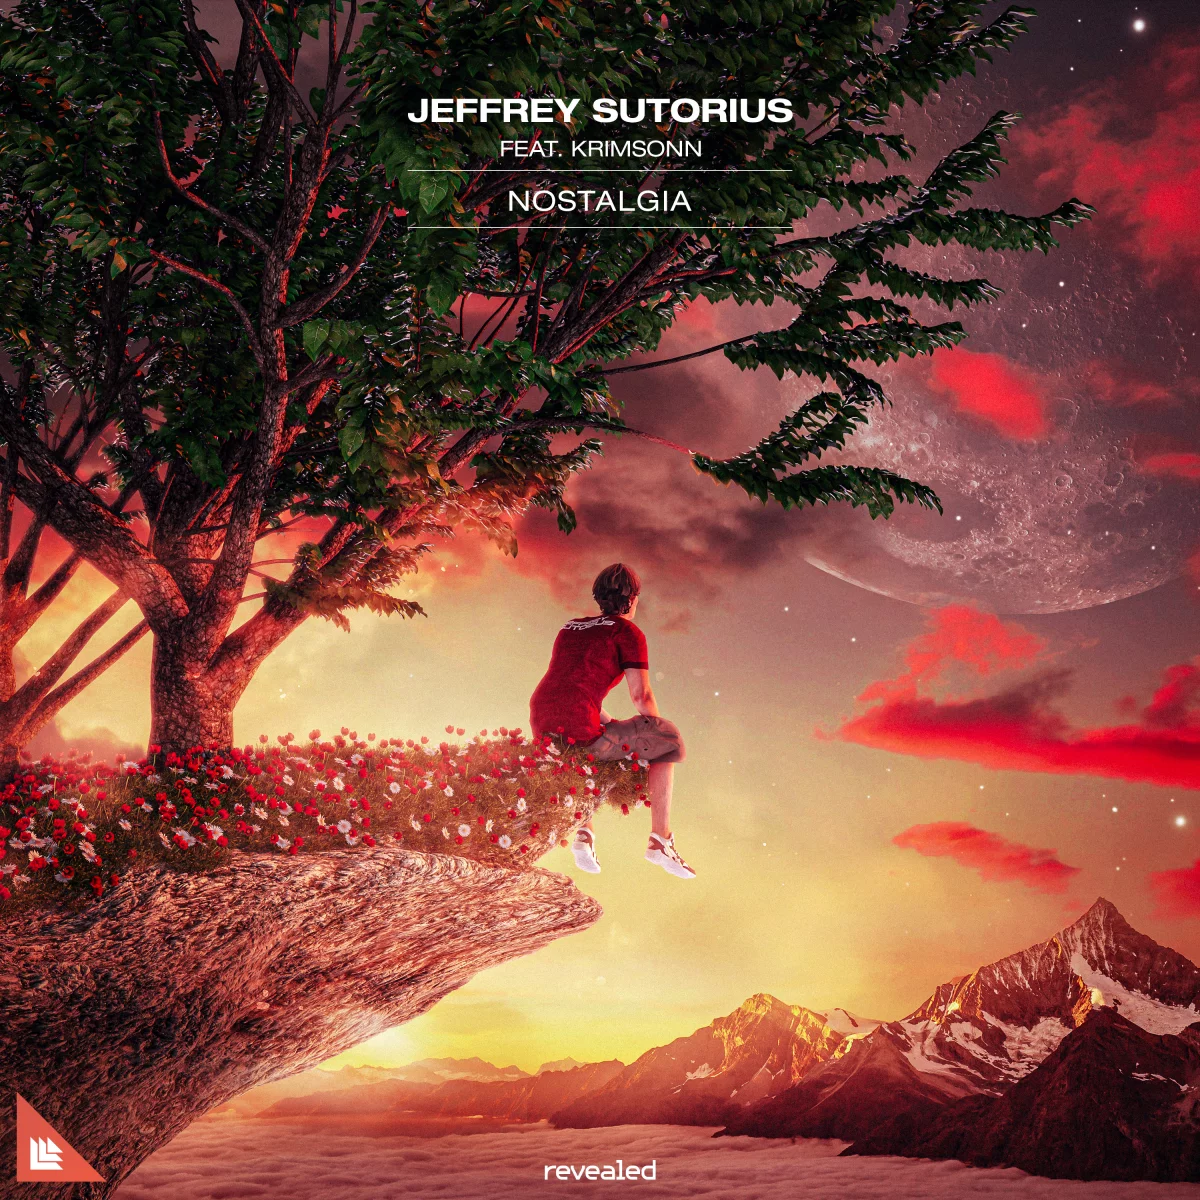 Nostalgia - Jeffrey Sutorius⁠ feat. Krimsonn⁠ 